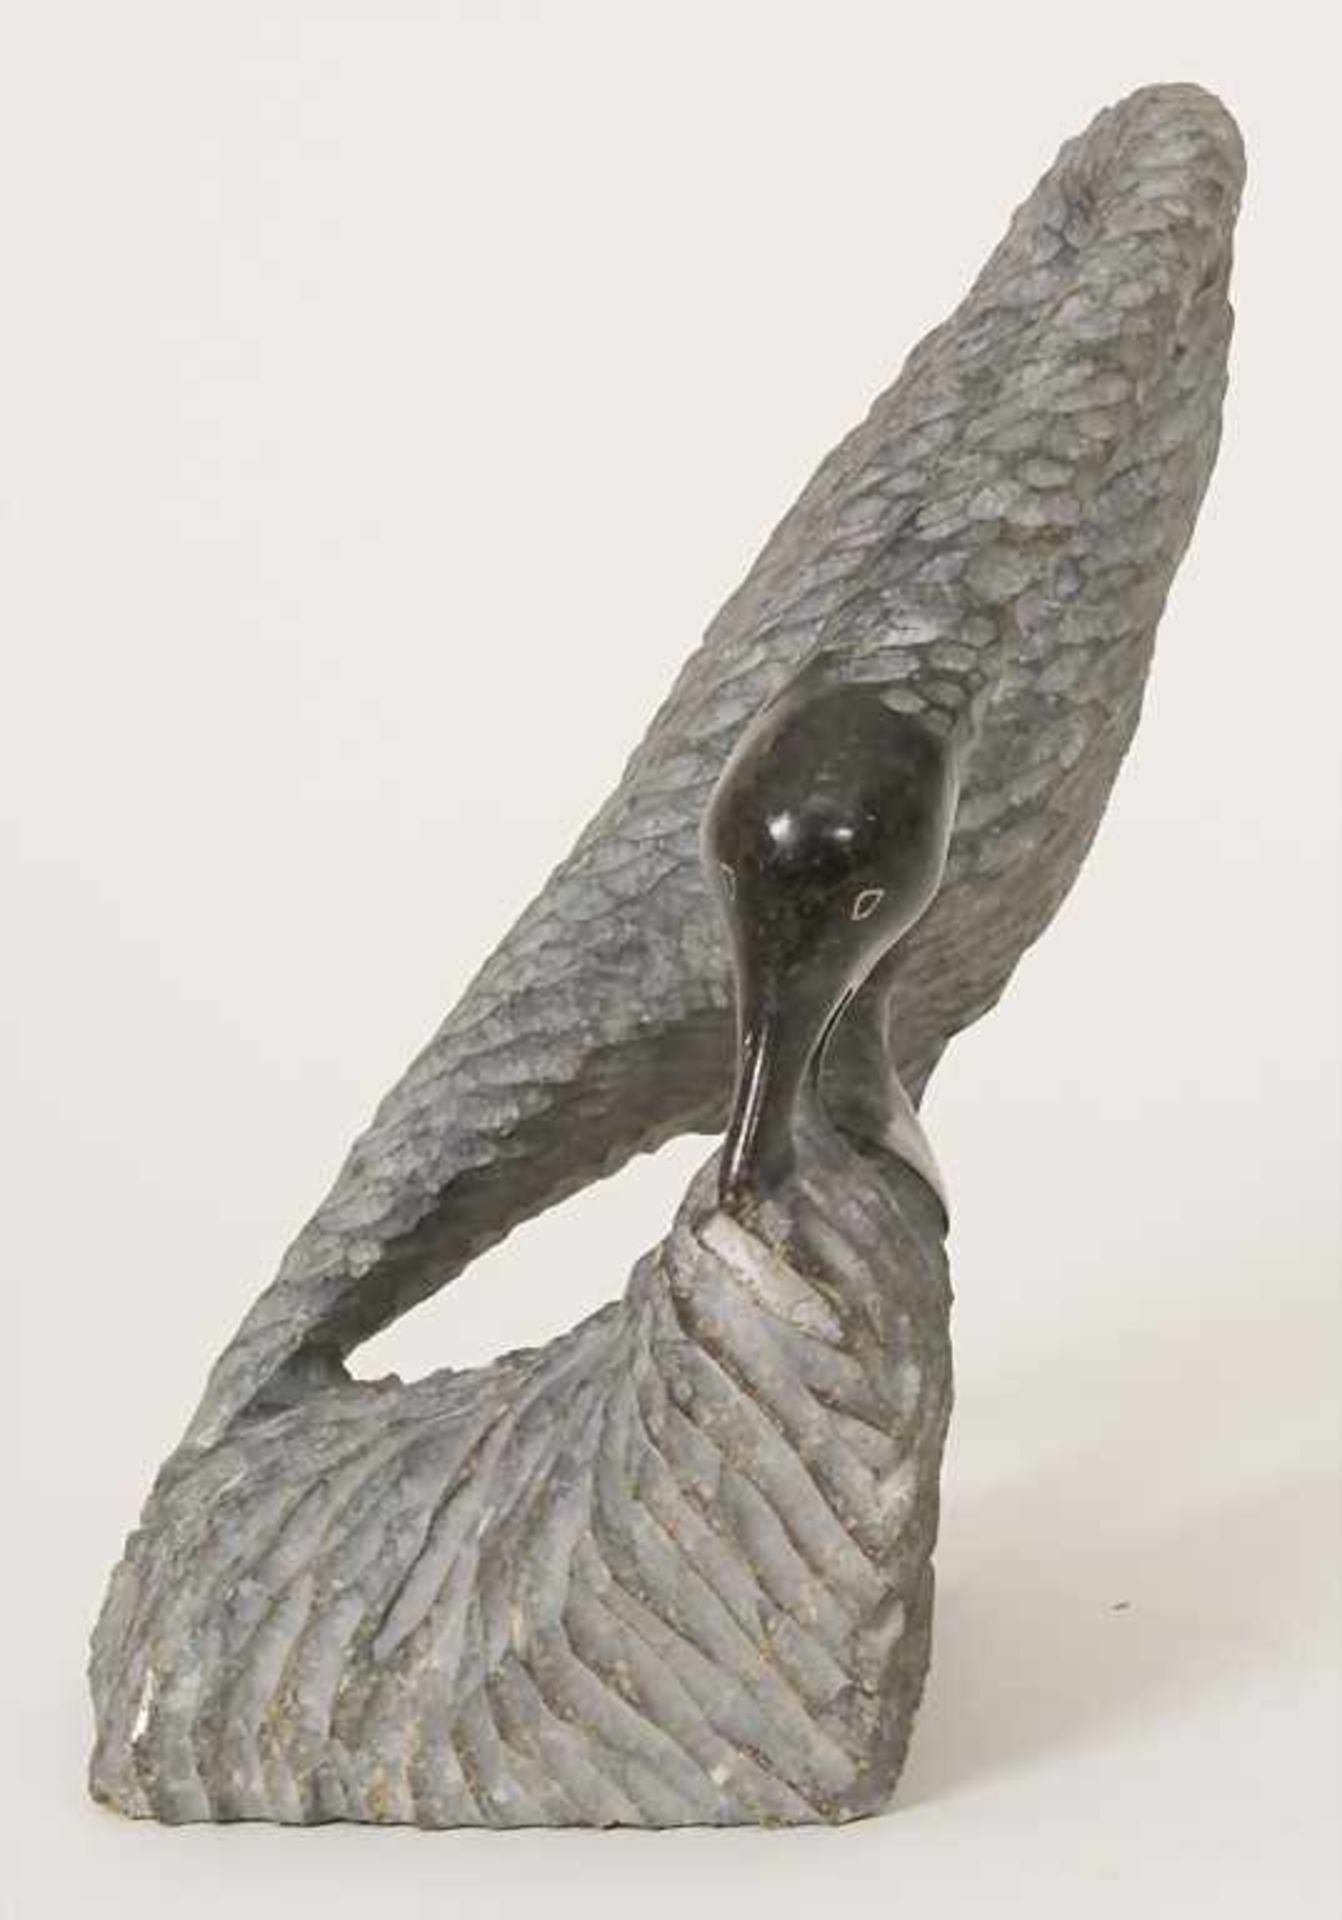 Tierfigur 'Wasservogel' / An animal figure 'Water bird', wohl Afrika, 20. Jh.Material: Speckstein, - Bild 4 aus 5